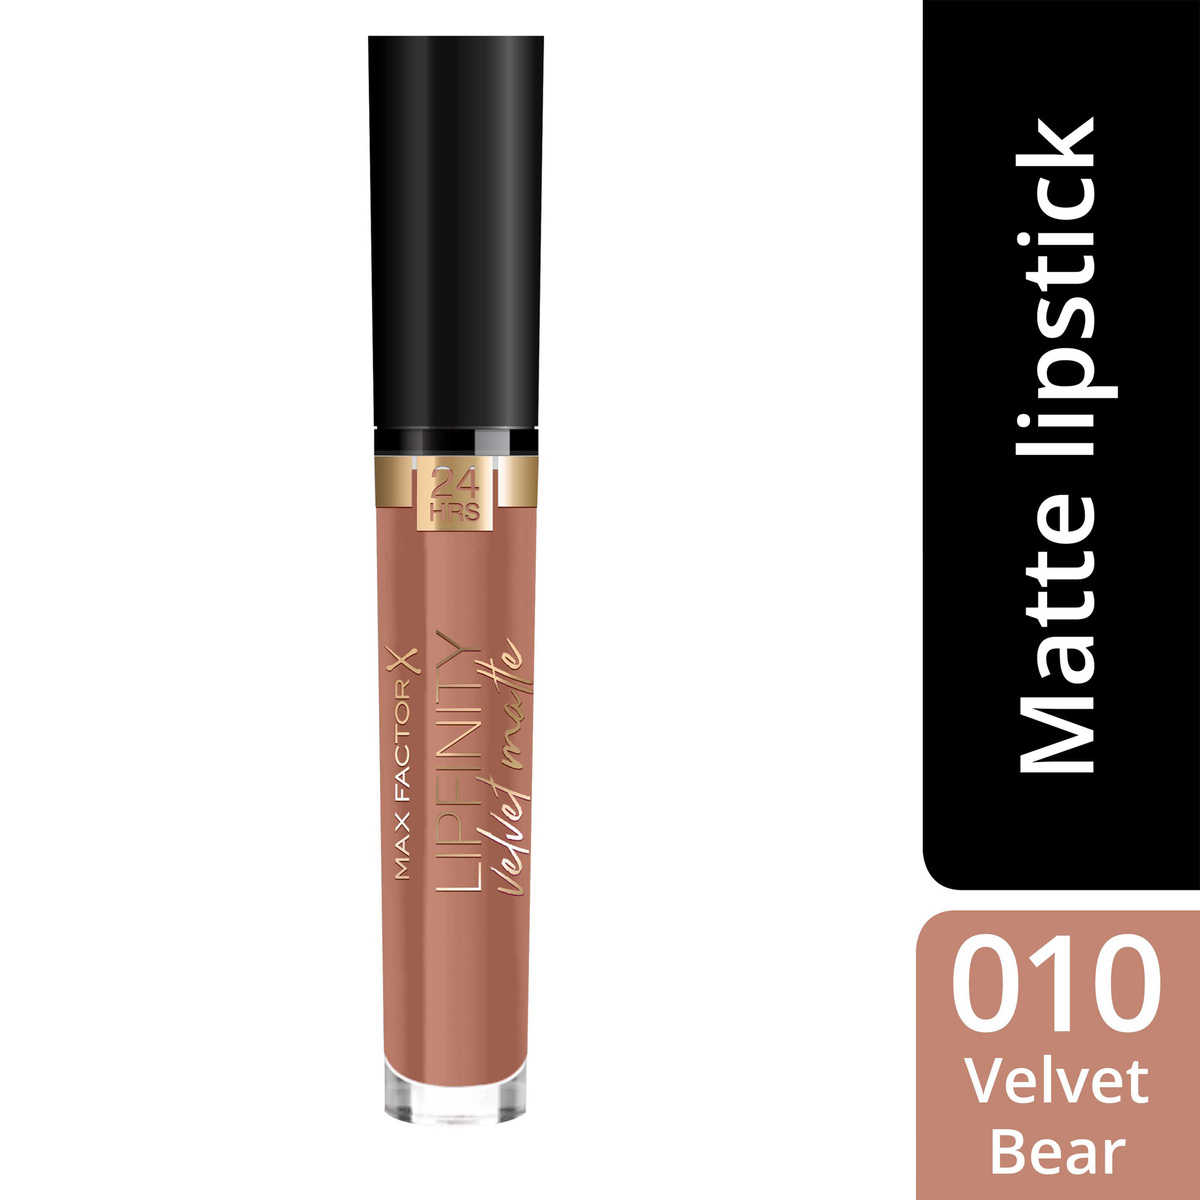 Max Factor Lipfinity Velvet Matte Liquid Lipstick, 010 Velvet Bear, 3.5 ml